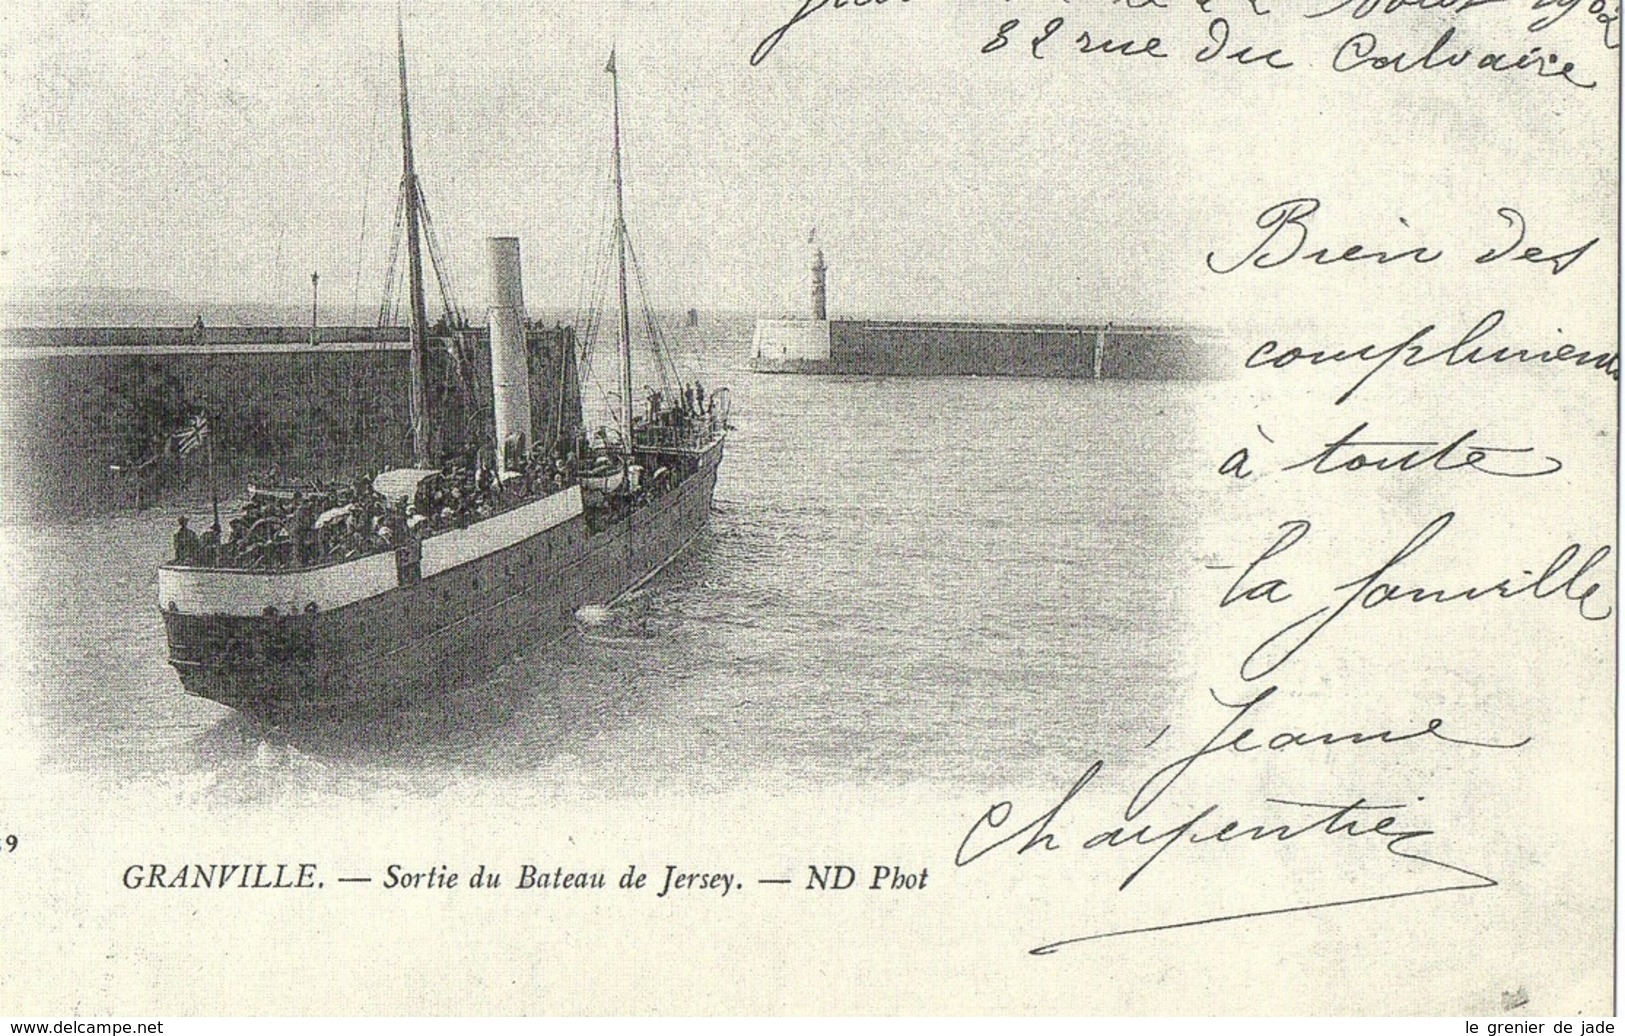 Haan Vooruitzicht Contour Granville - 50 NORMANDIE GRANVILLE Sortie du bateau de Jersey (Cartes  d'Autrefois)